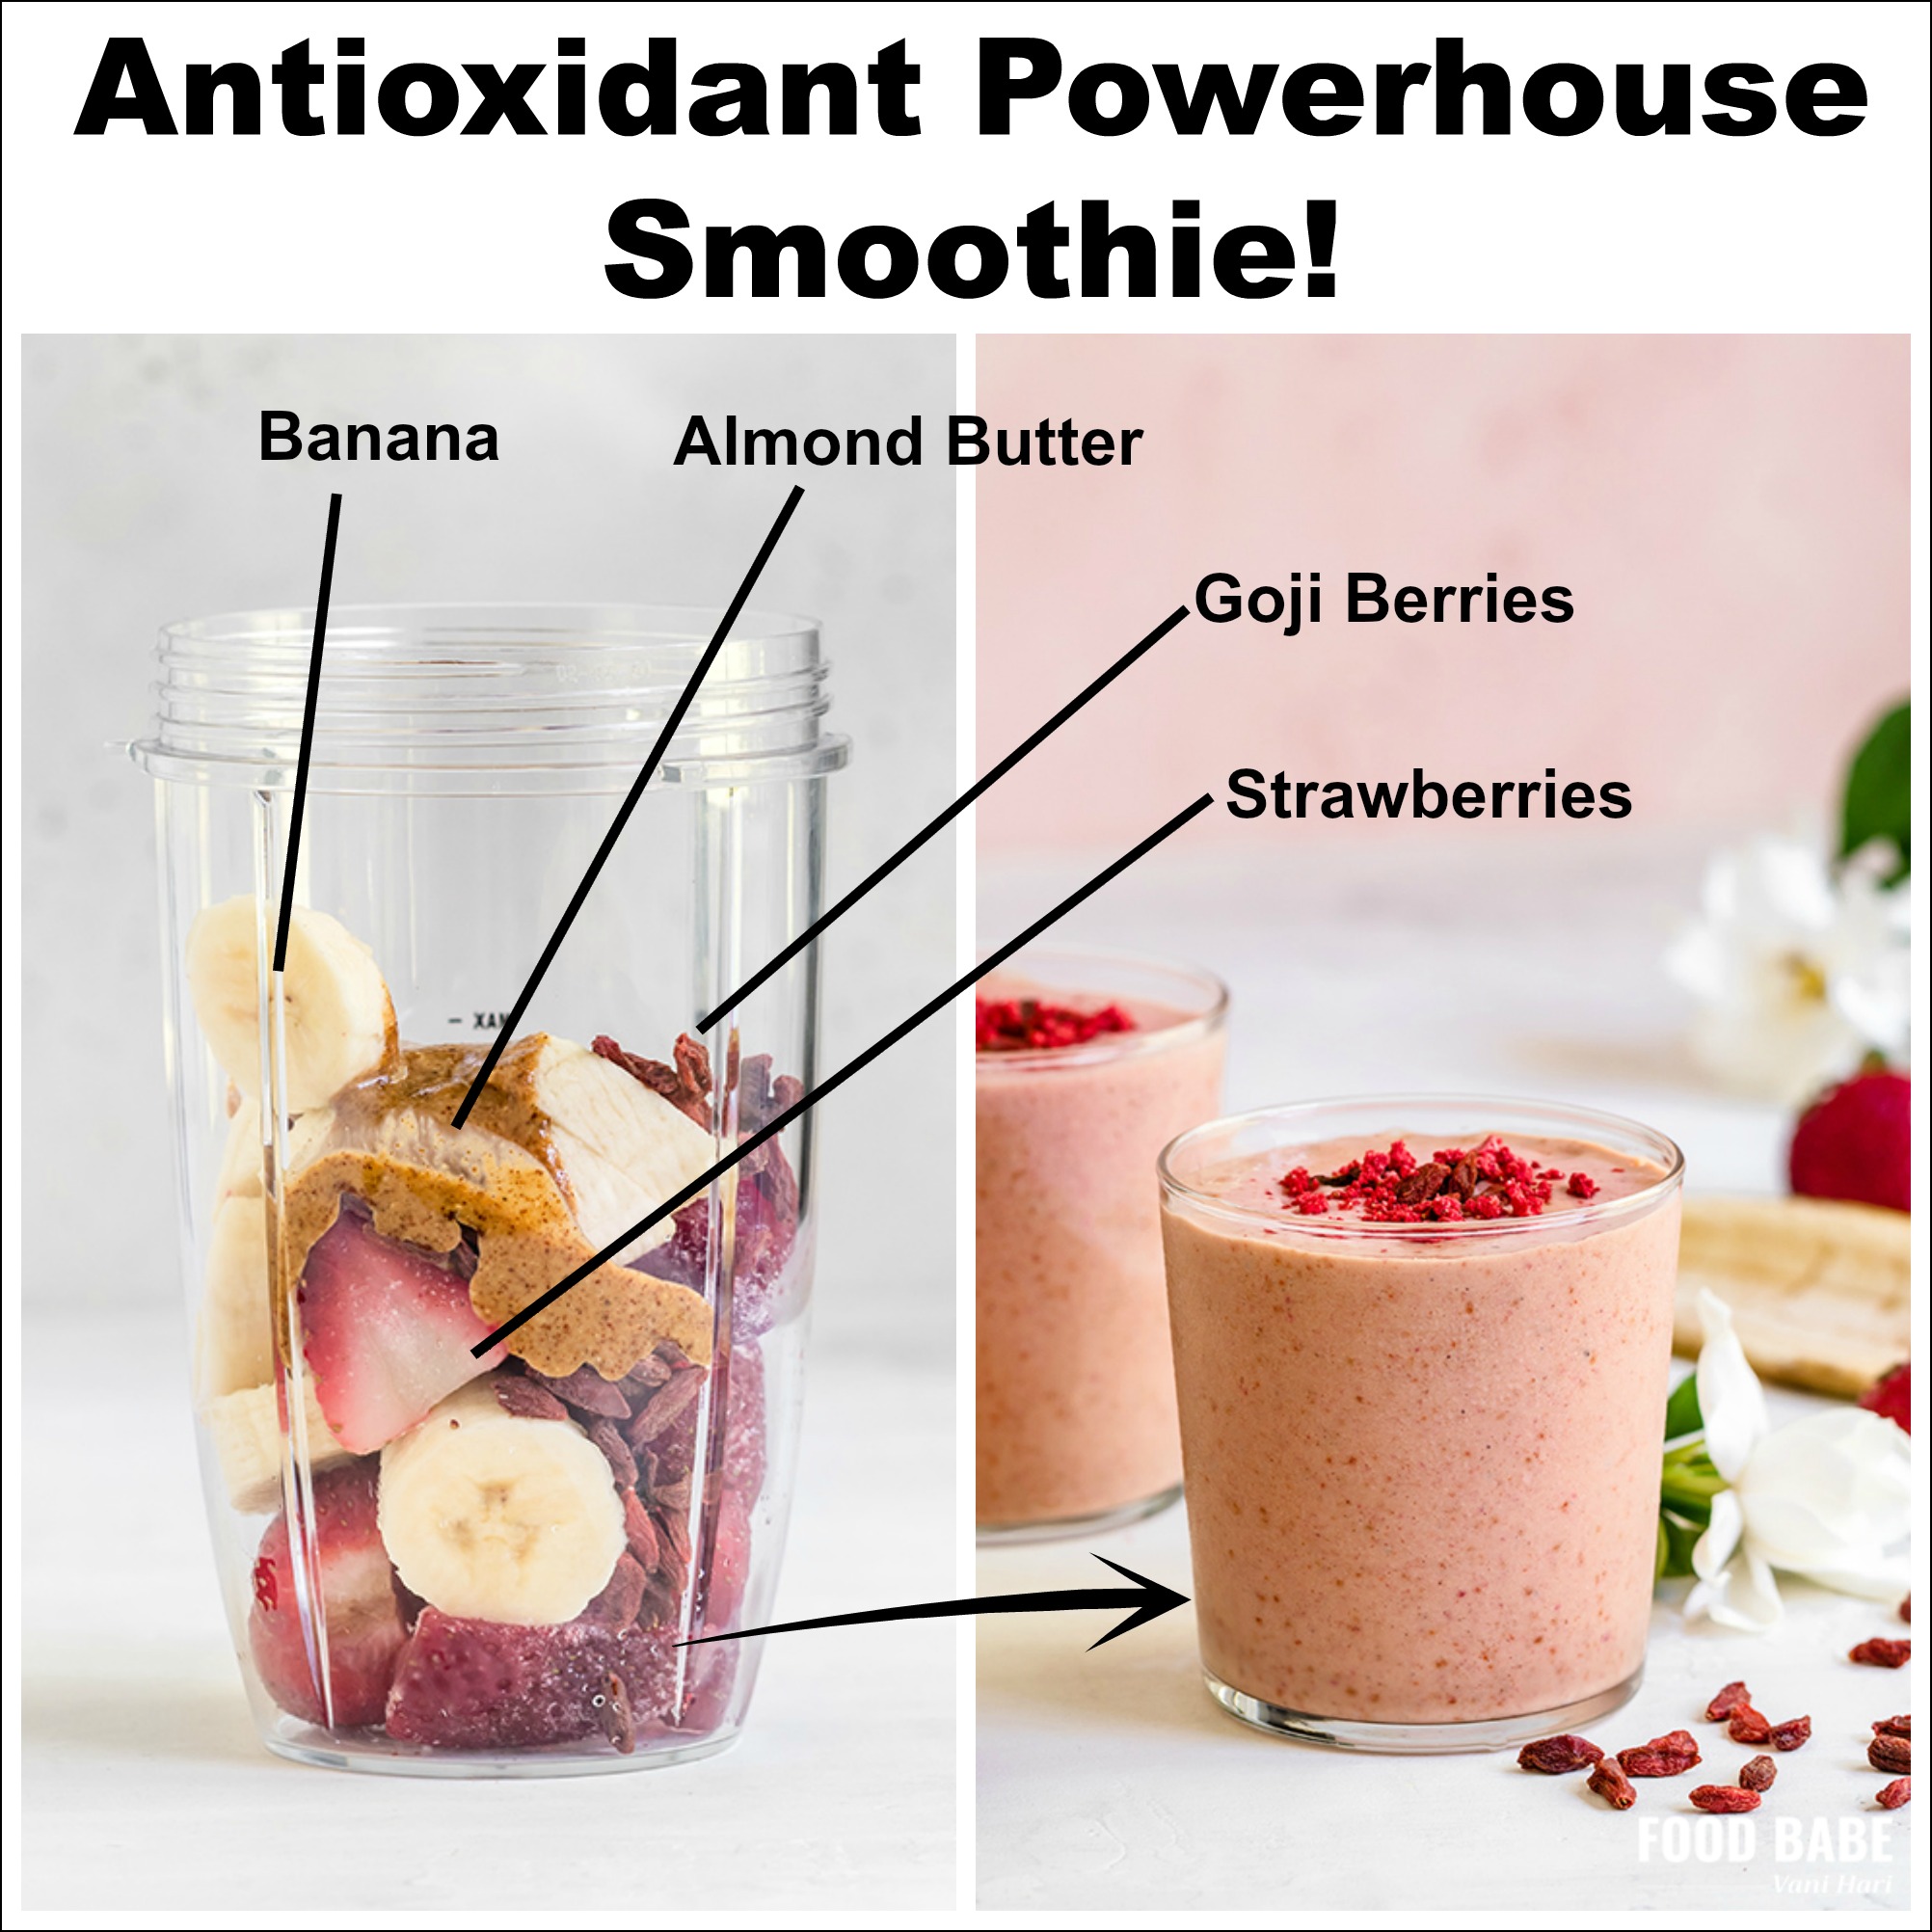 Goji Berry Smoothie - An antioxidant powerhouse!